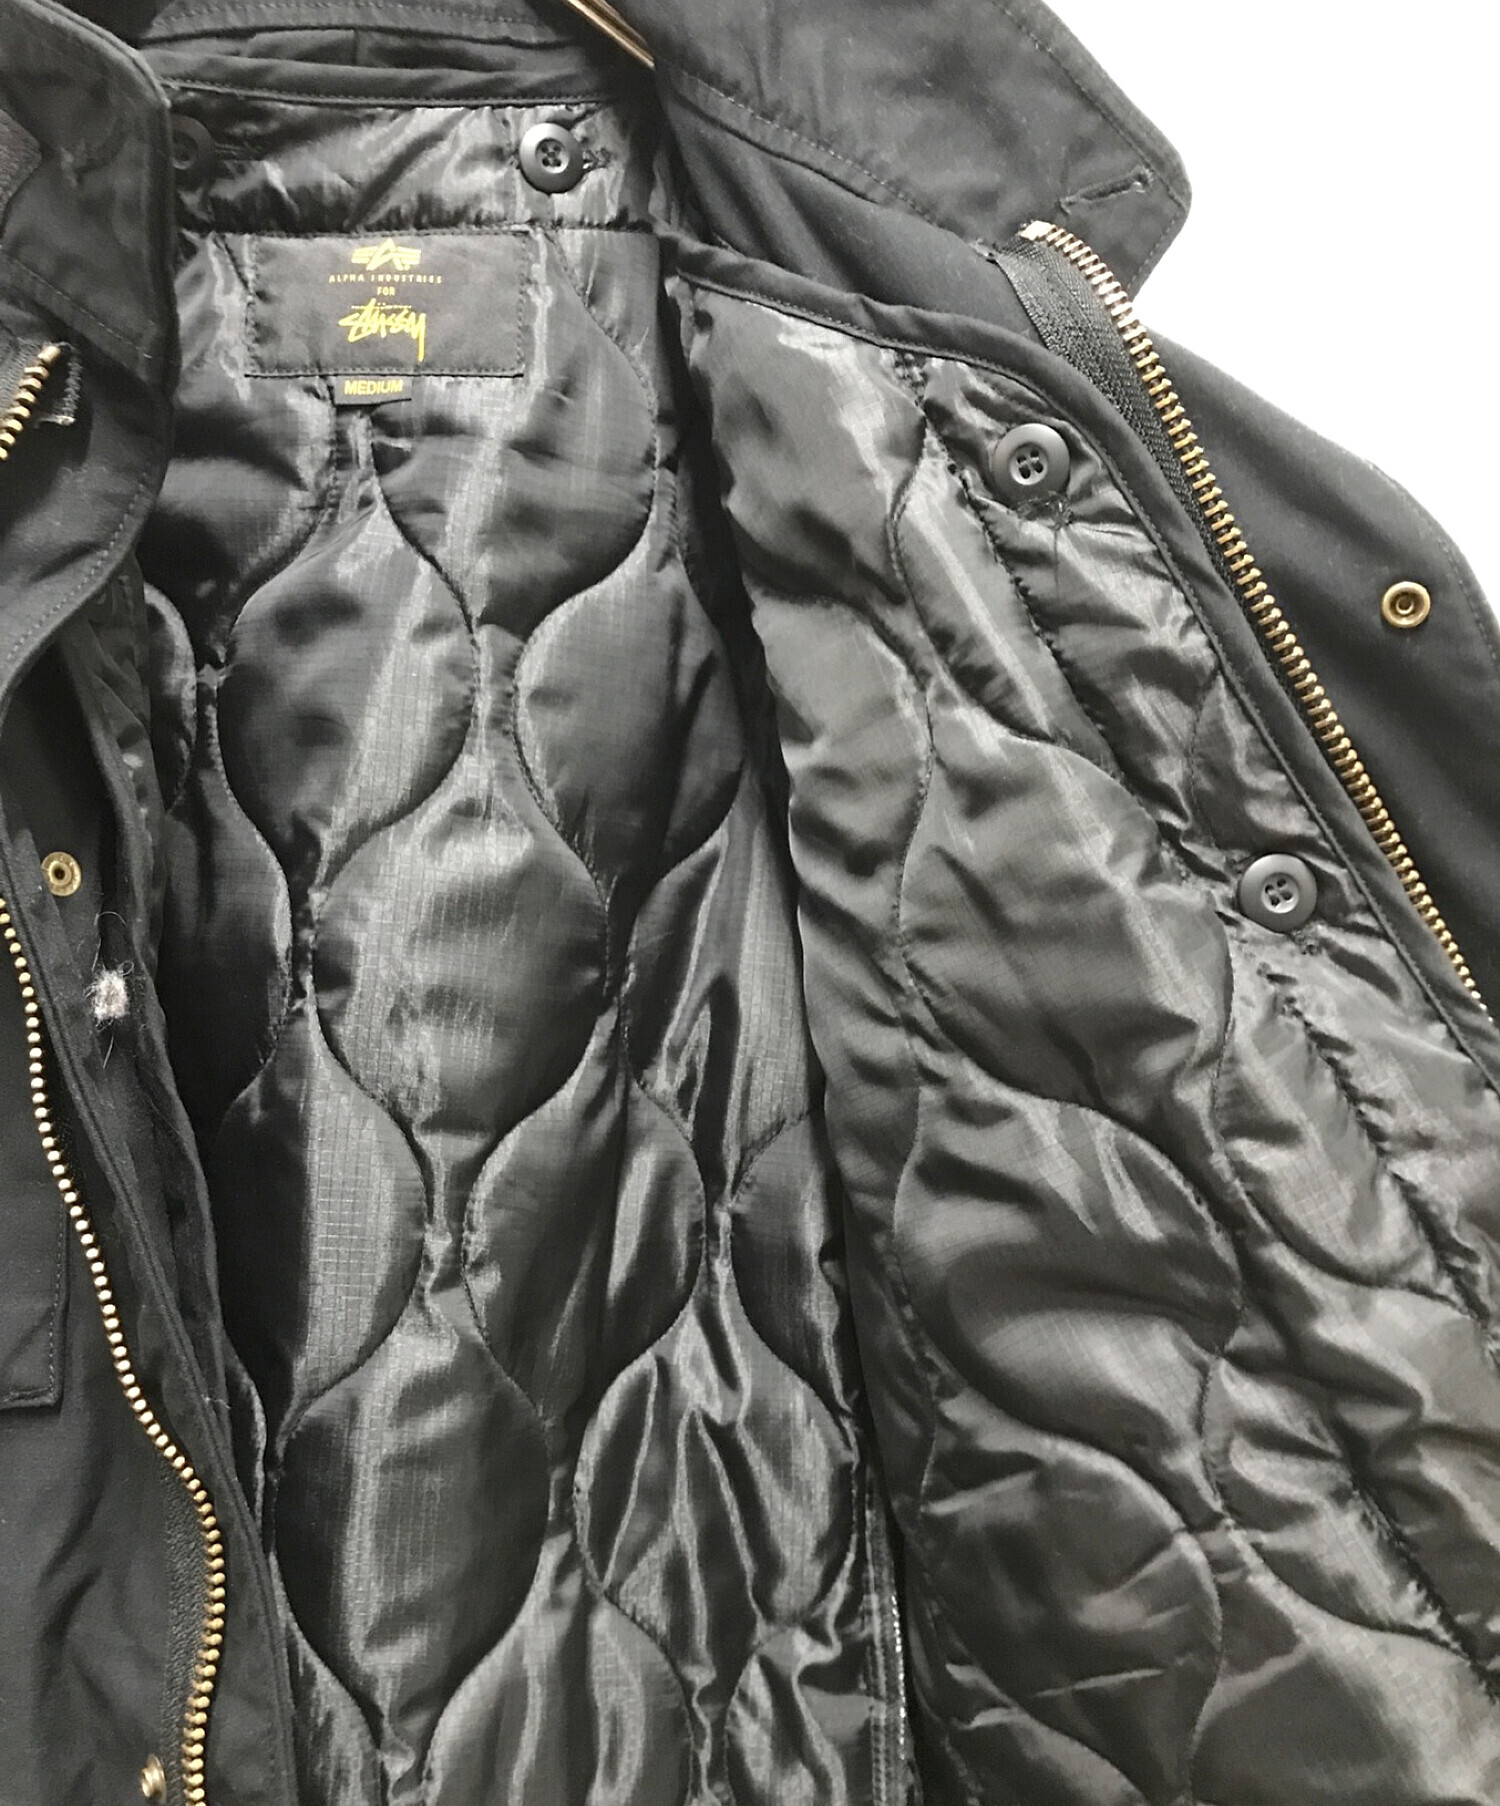 ステューシー × アルファ 25周年コラボ M65ジャケット XSサイズ